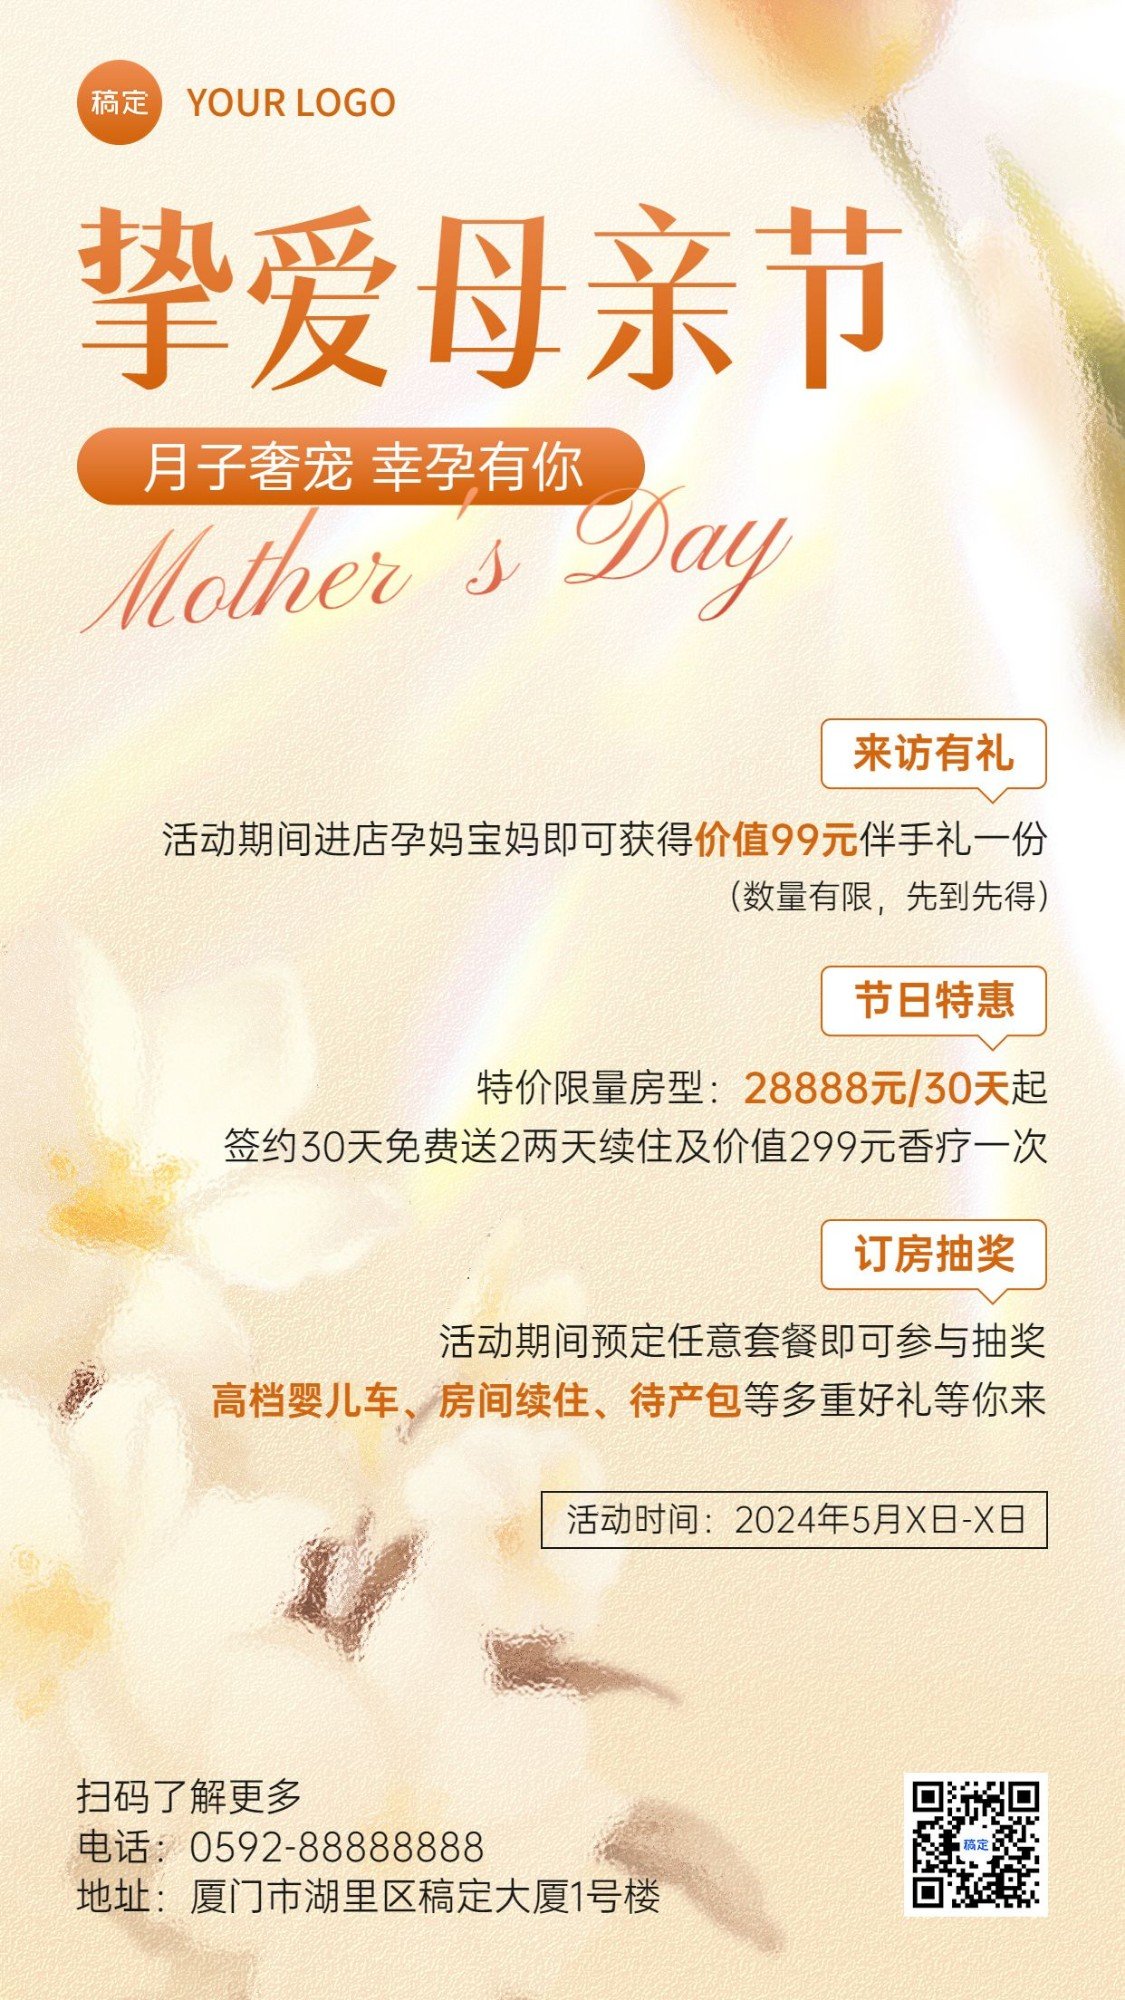 母亲节月子中心节日营销促销活动手机海报